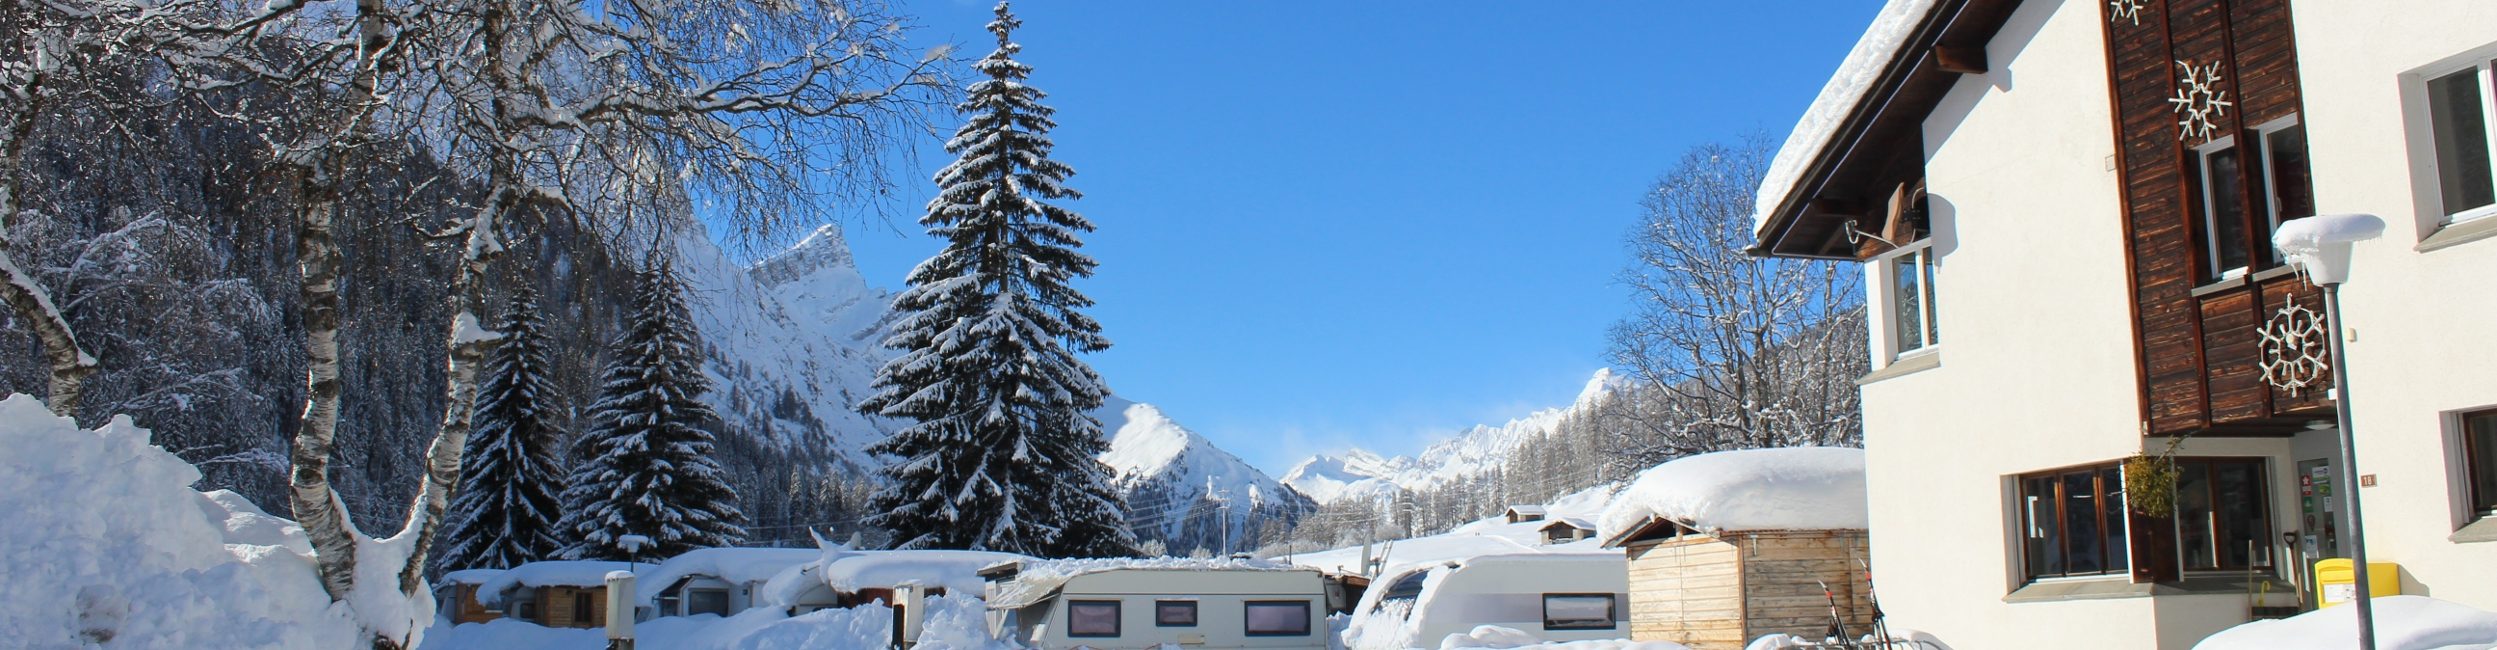 Camping Splügen Haupthaus im Winter